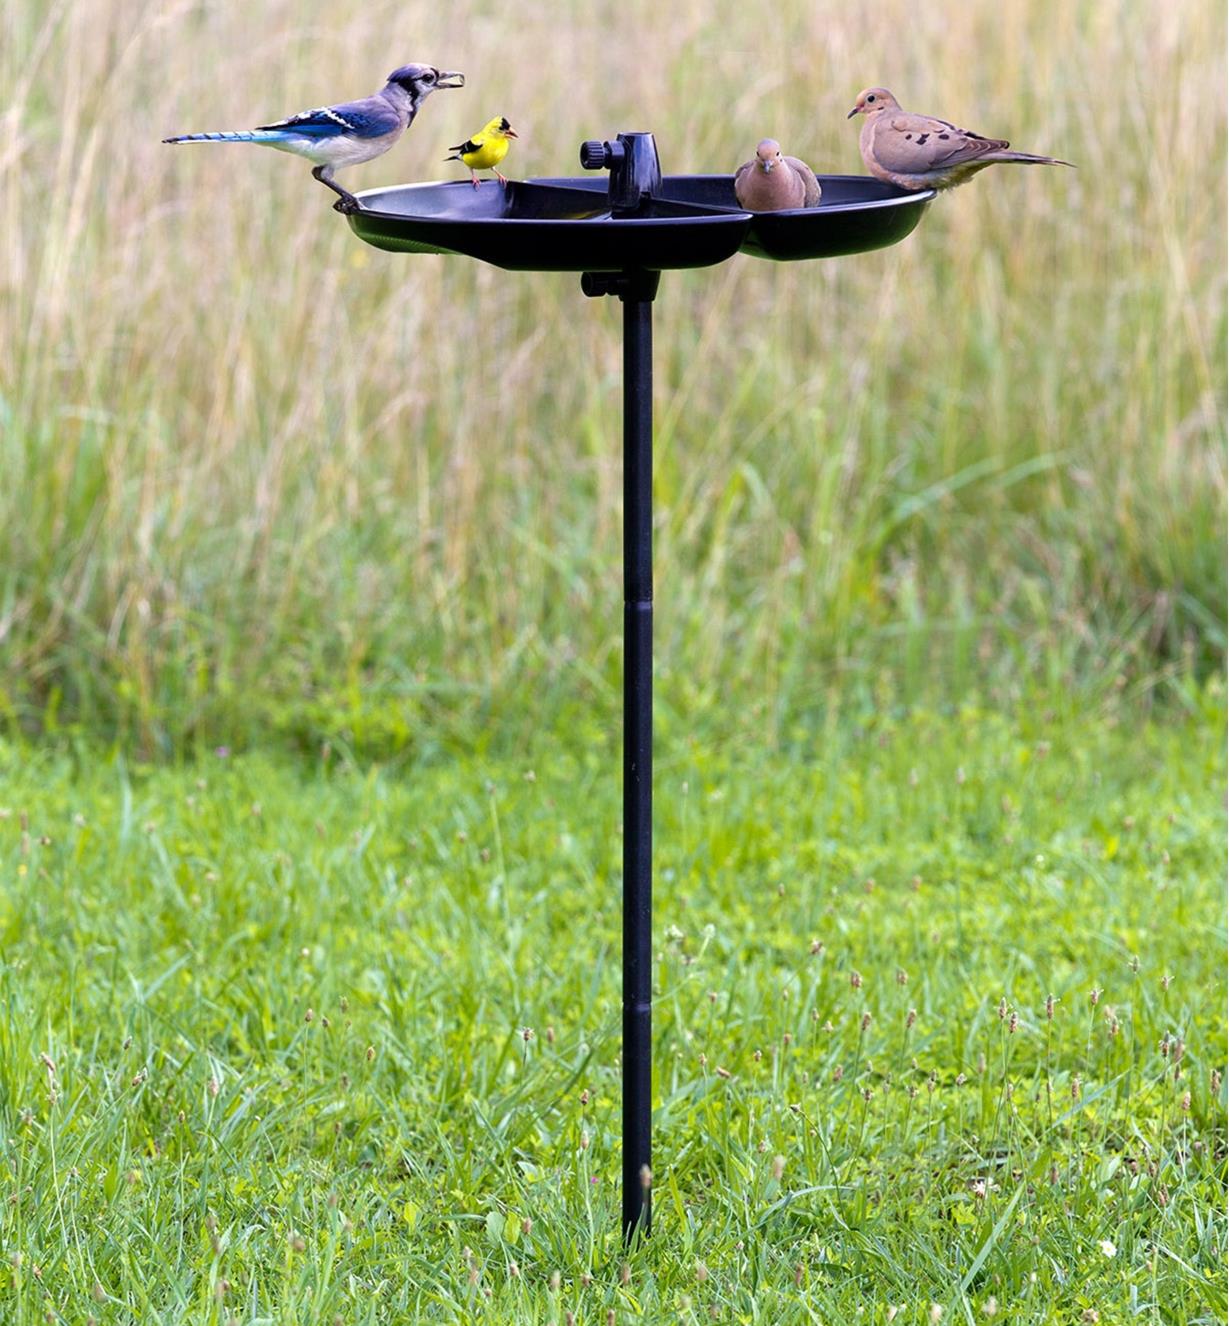 Oiseaux perchés sur le bord d'un plateau fixé au bout d'un poteau en guise de mangeoire